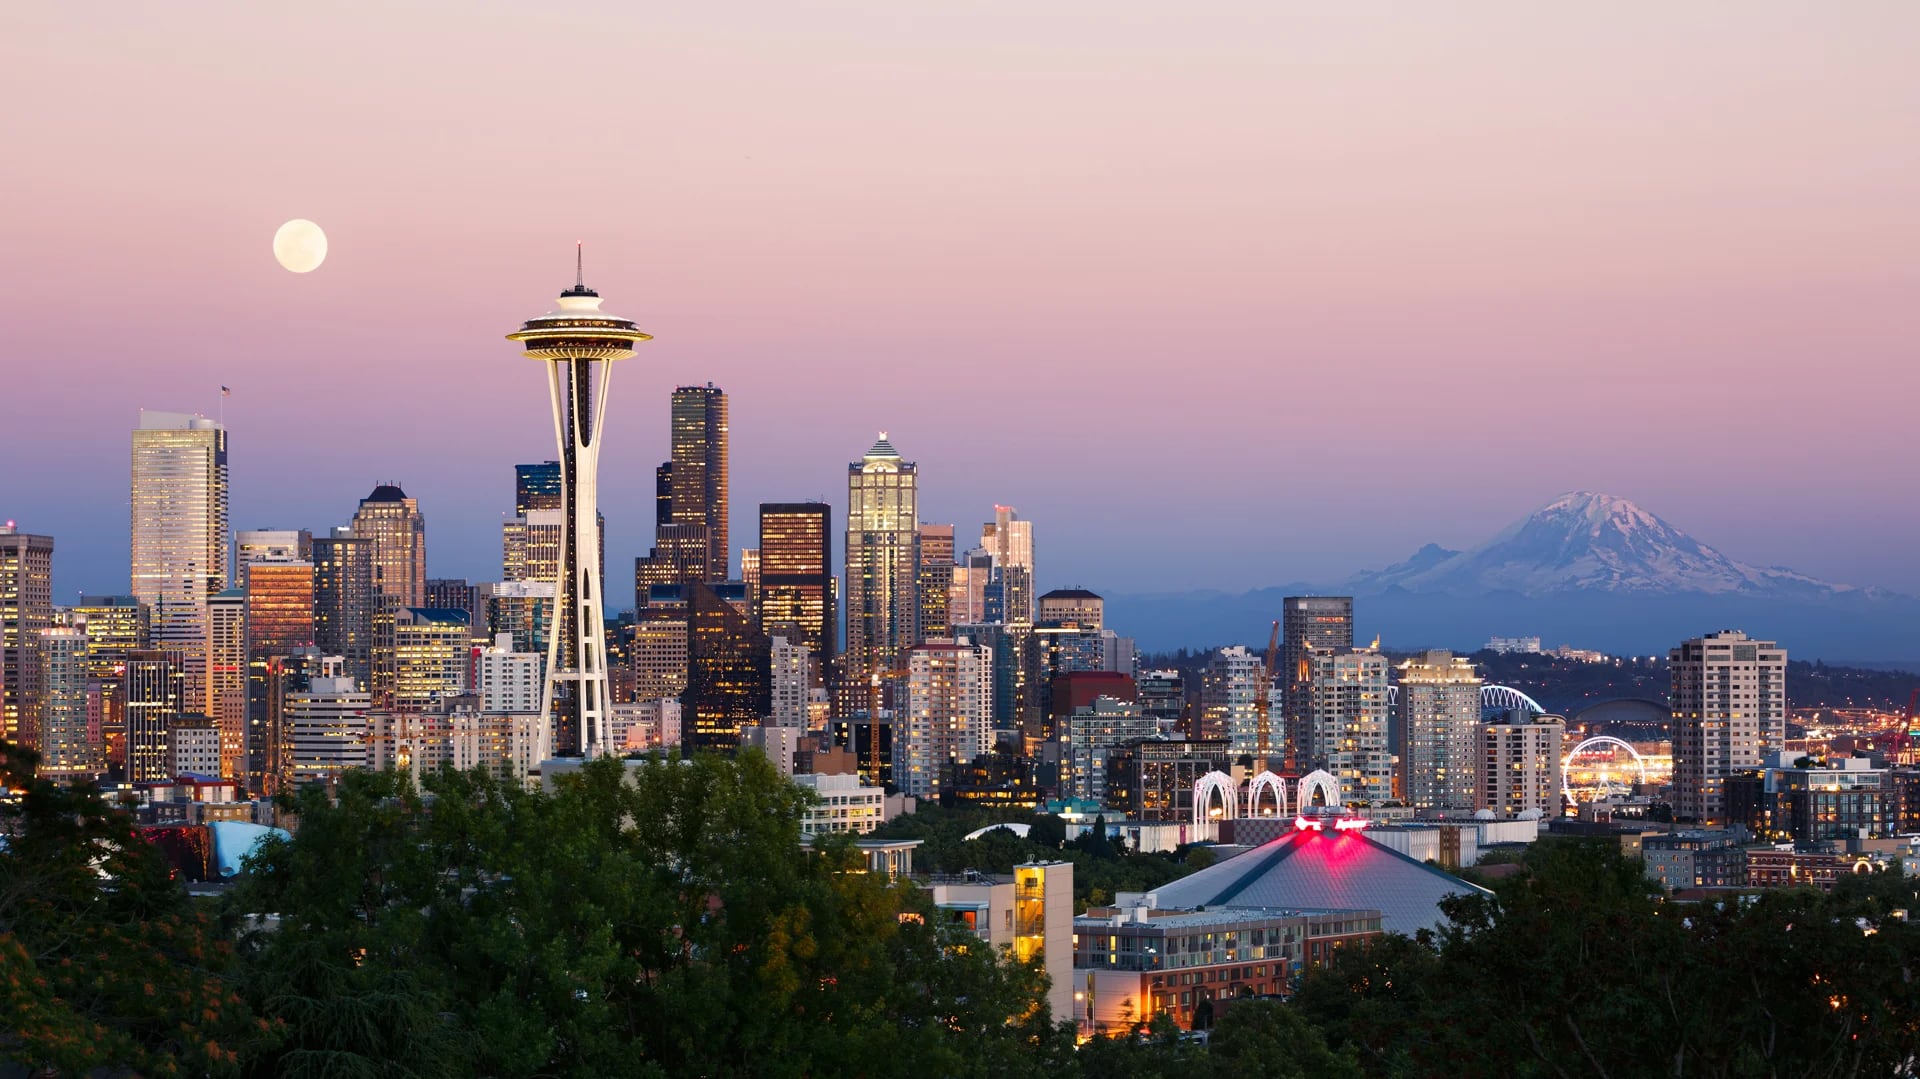 La Seattle Space Needle quizás sea una de las atracciones turísticas más reconocidas de Estados Unidos (istock)